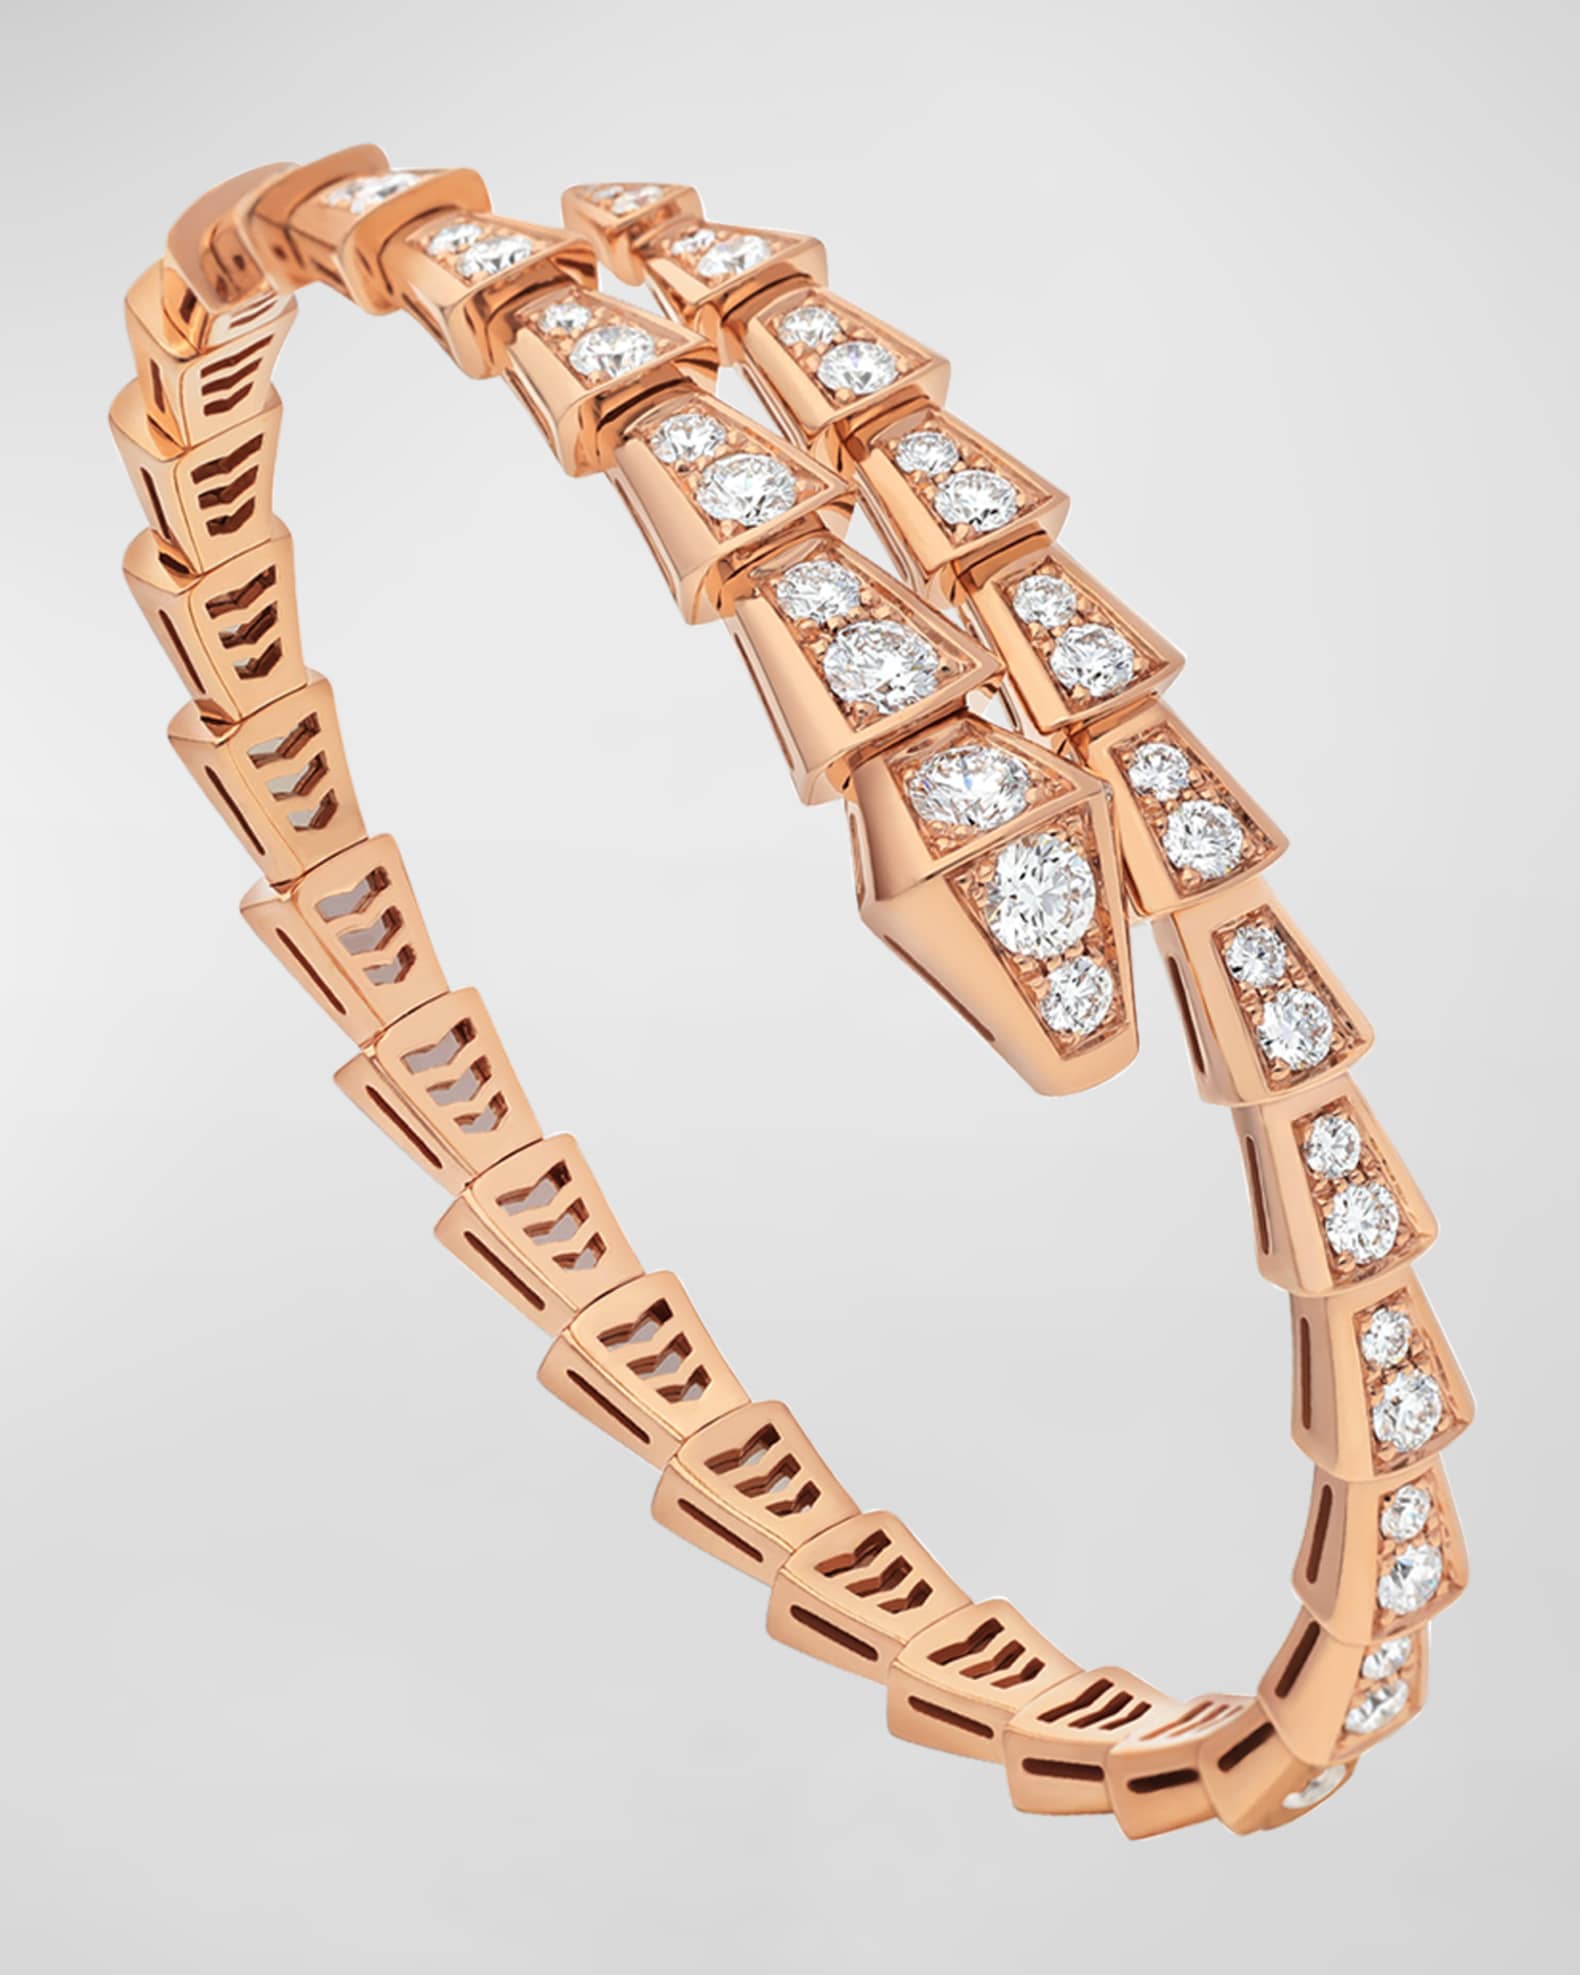 replica Jewelry of Bvlgari, Cartier, Dior, Gucci, LV